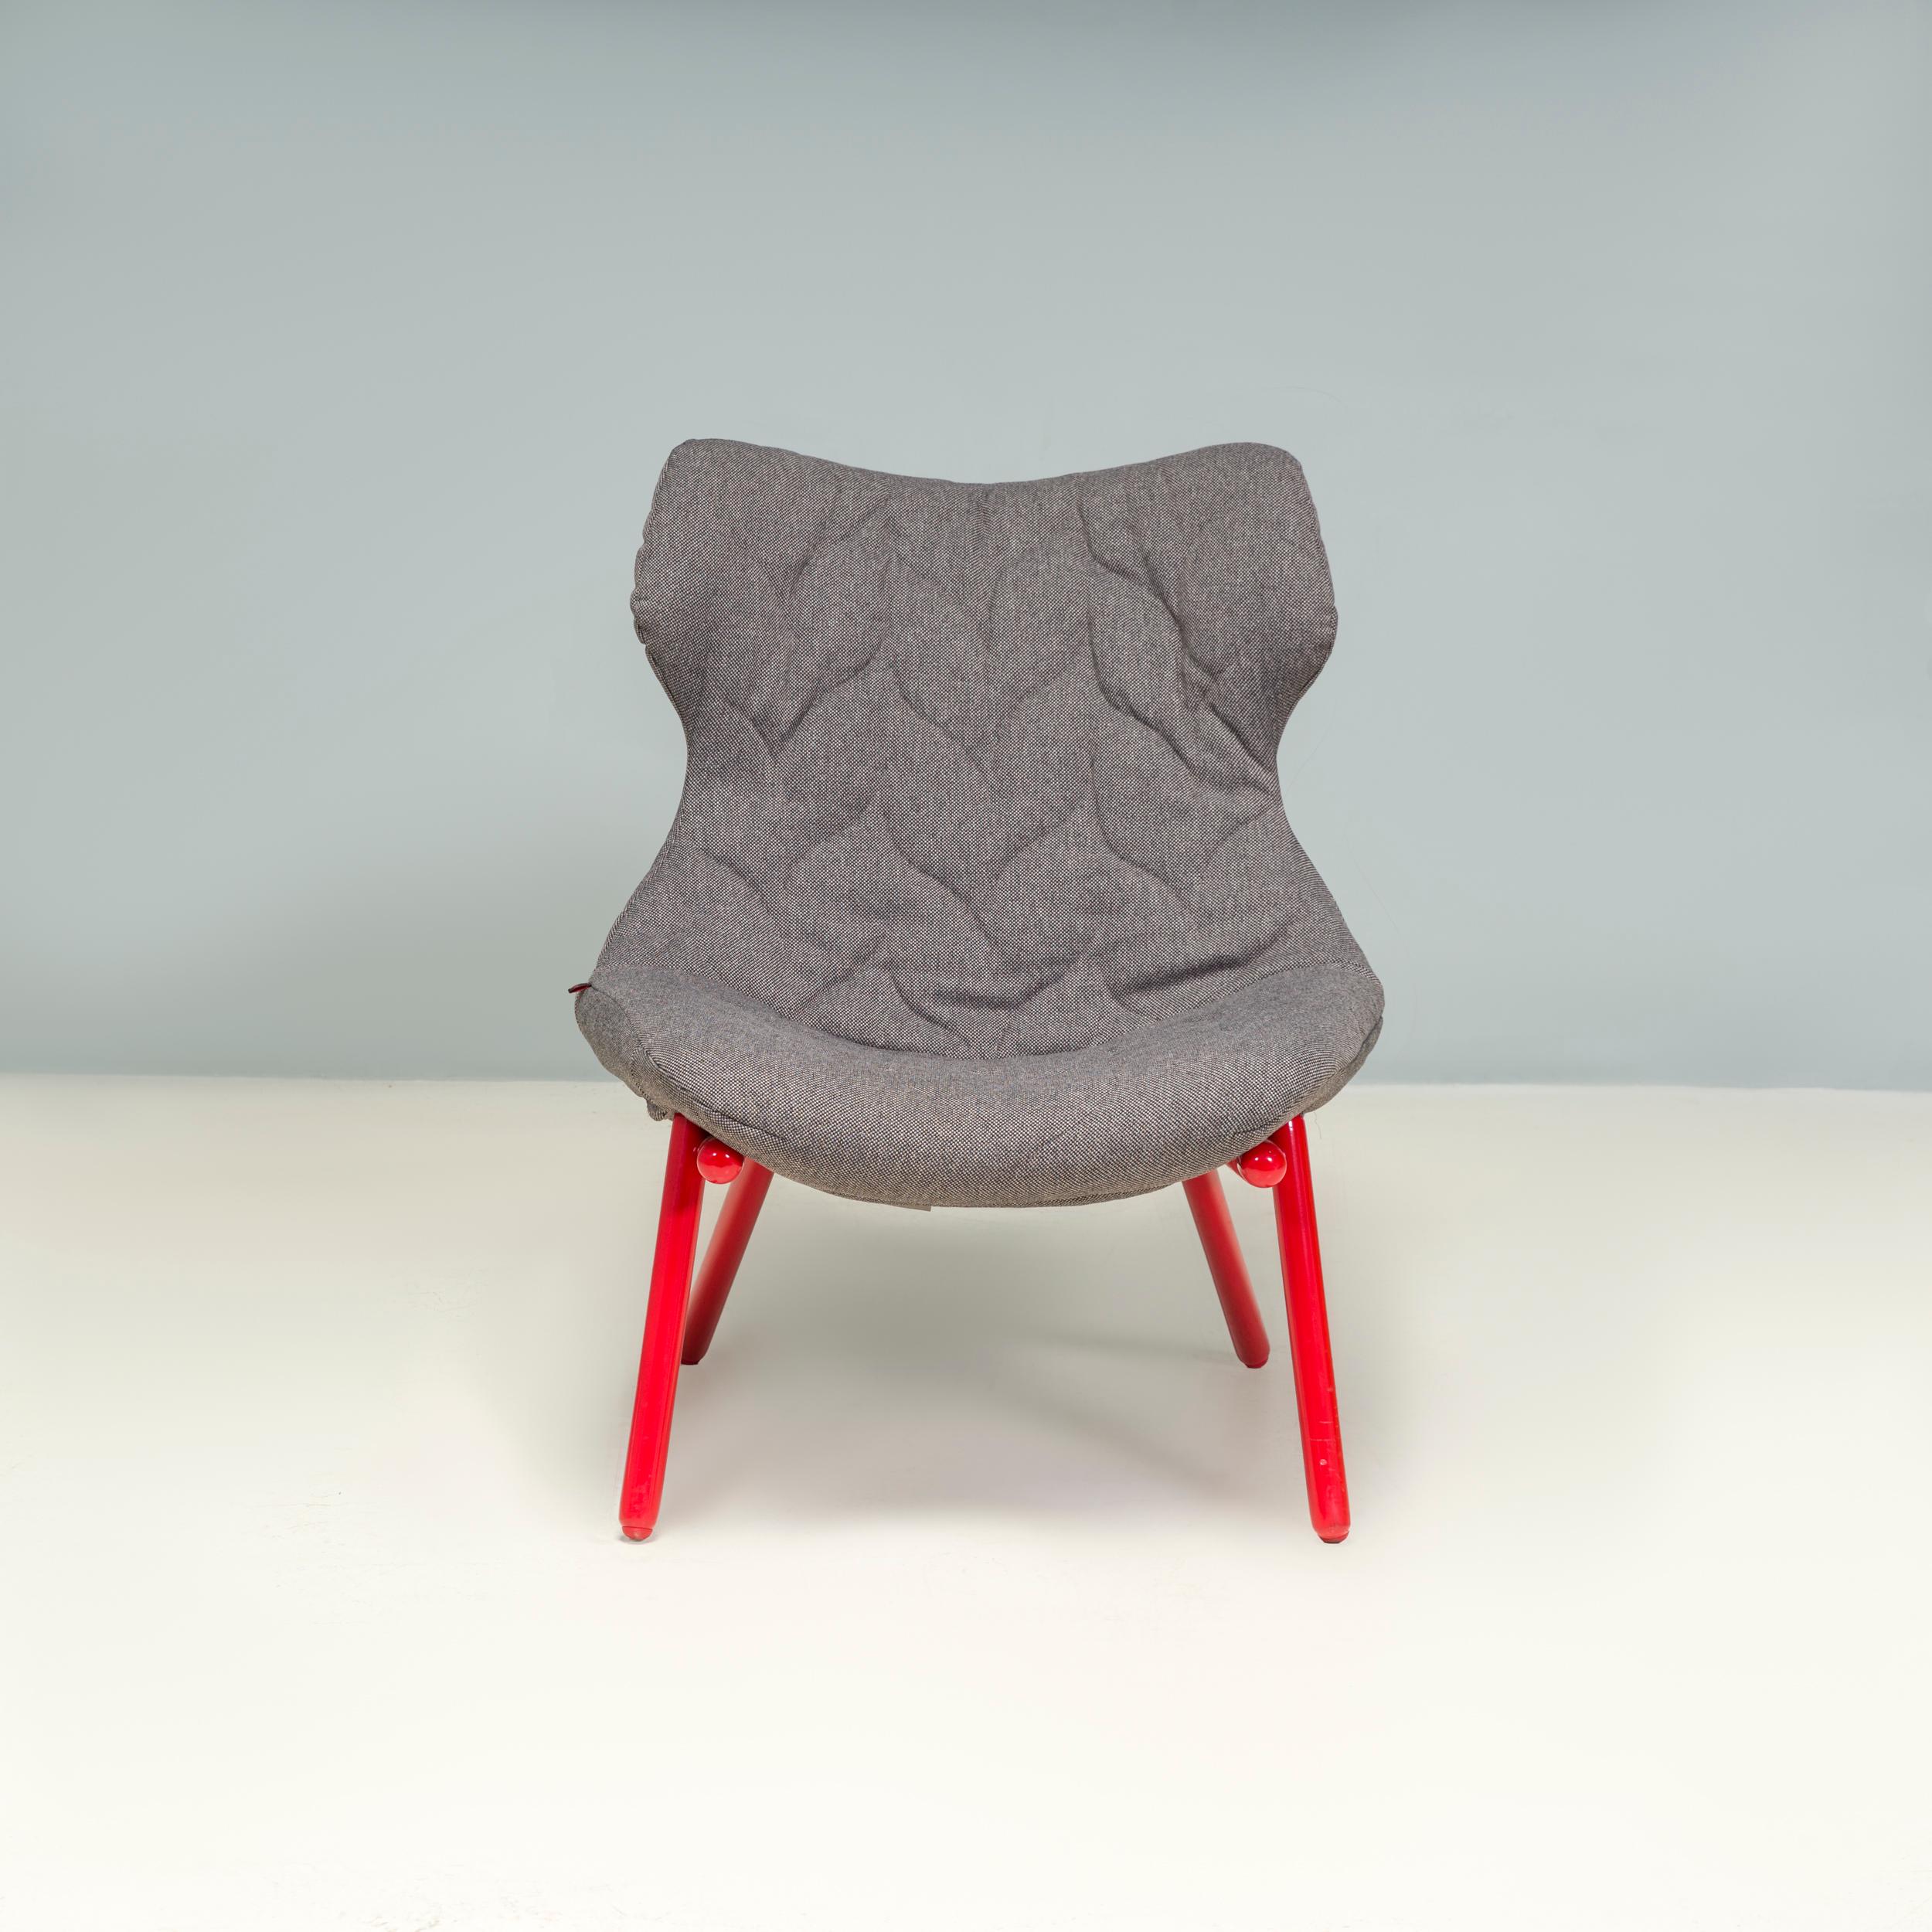 Conçu à l'origine par Patricia Urquiola pour Kartell en 2012, le fauteuil Foliage s'inspire de la nature, trouvant l'équilibre parfait entre le mot naturel et le design de mobilier contemporain.

Construit à partir d'un cadre en fer tubulaire dans